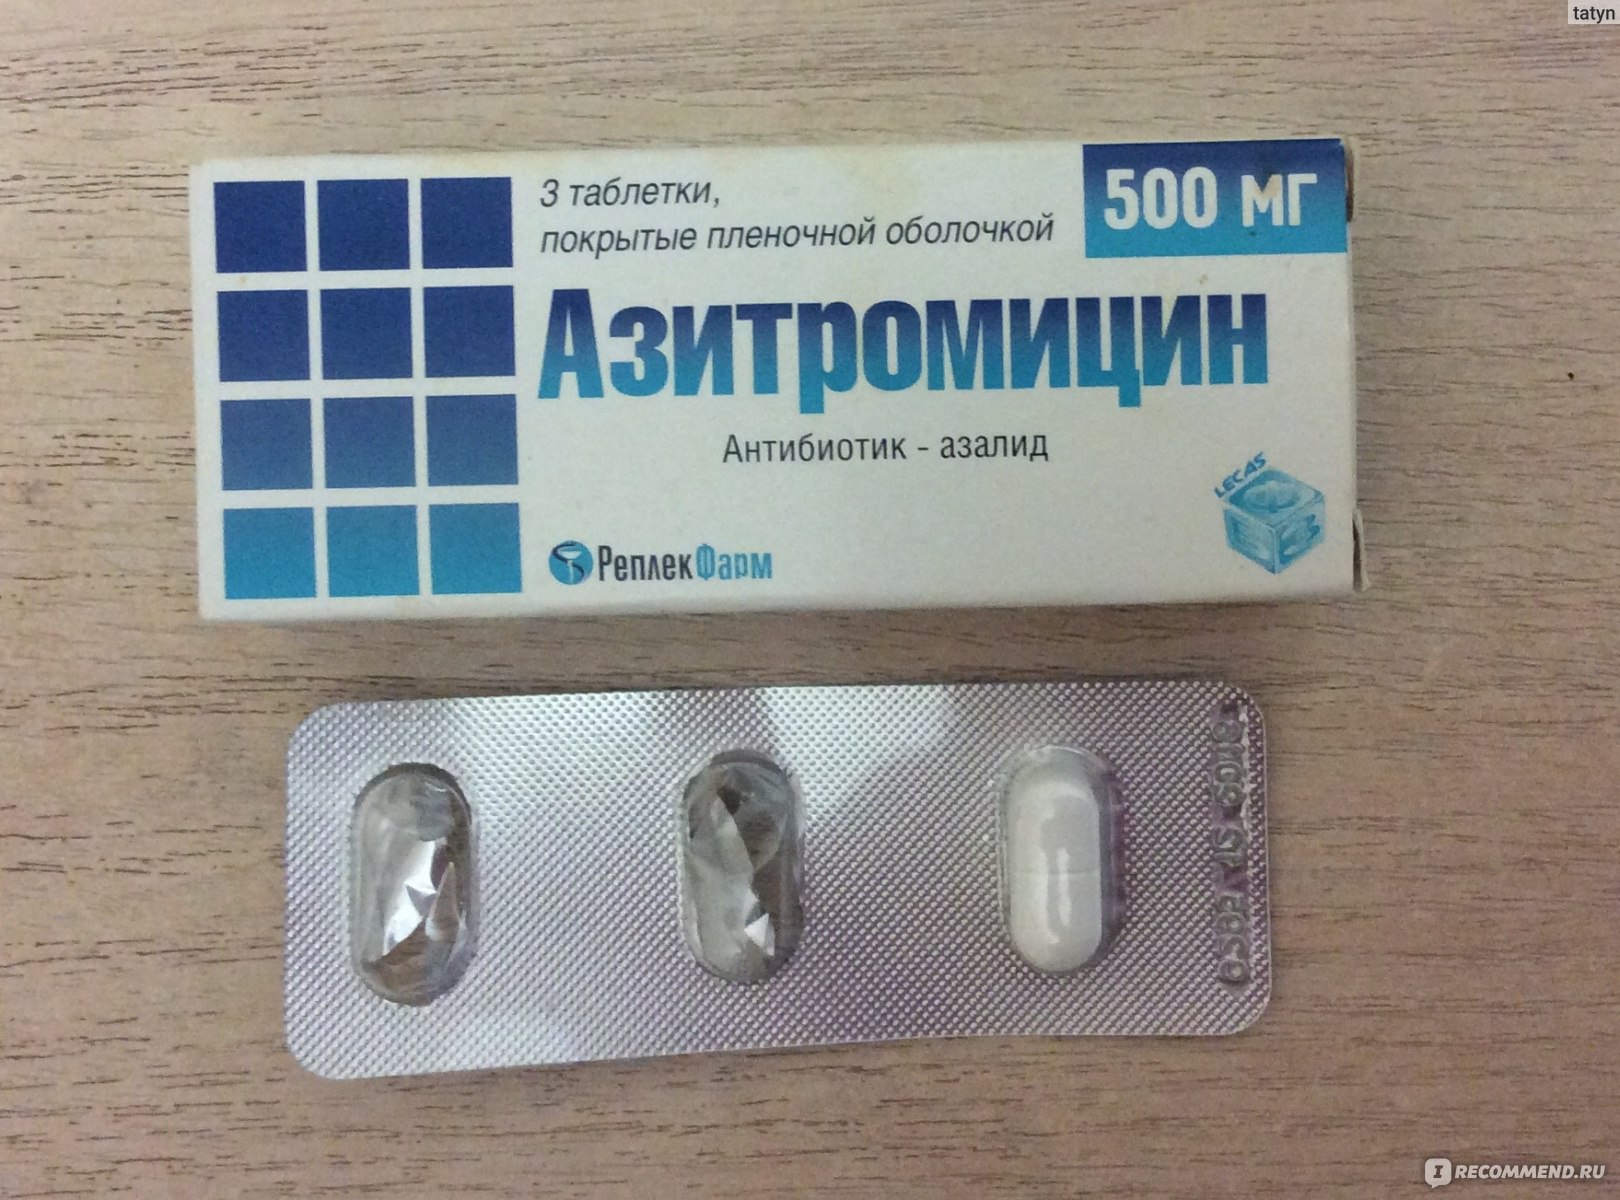 Три таблетки от простуды. Антибиотик Азитромицин 500 мг. Антибиотик 3 таблетки название Азитромицин. Антибиотик 3 таблетки в упаковке Азитромицин. Антибиотик от кашля 3 таблетки название.